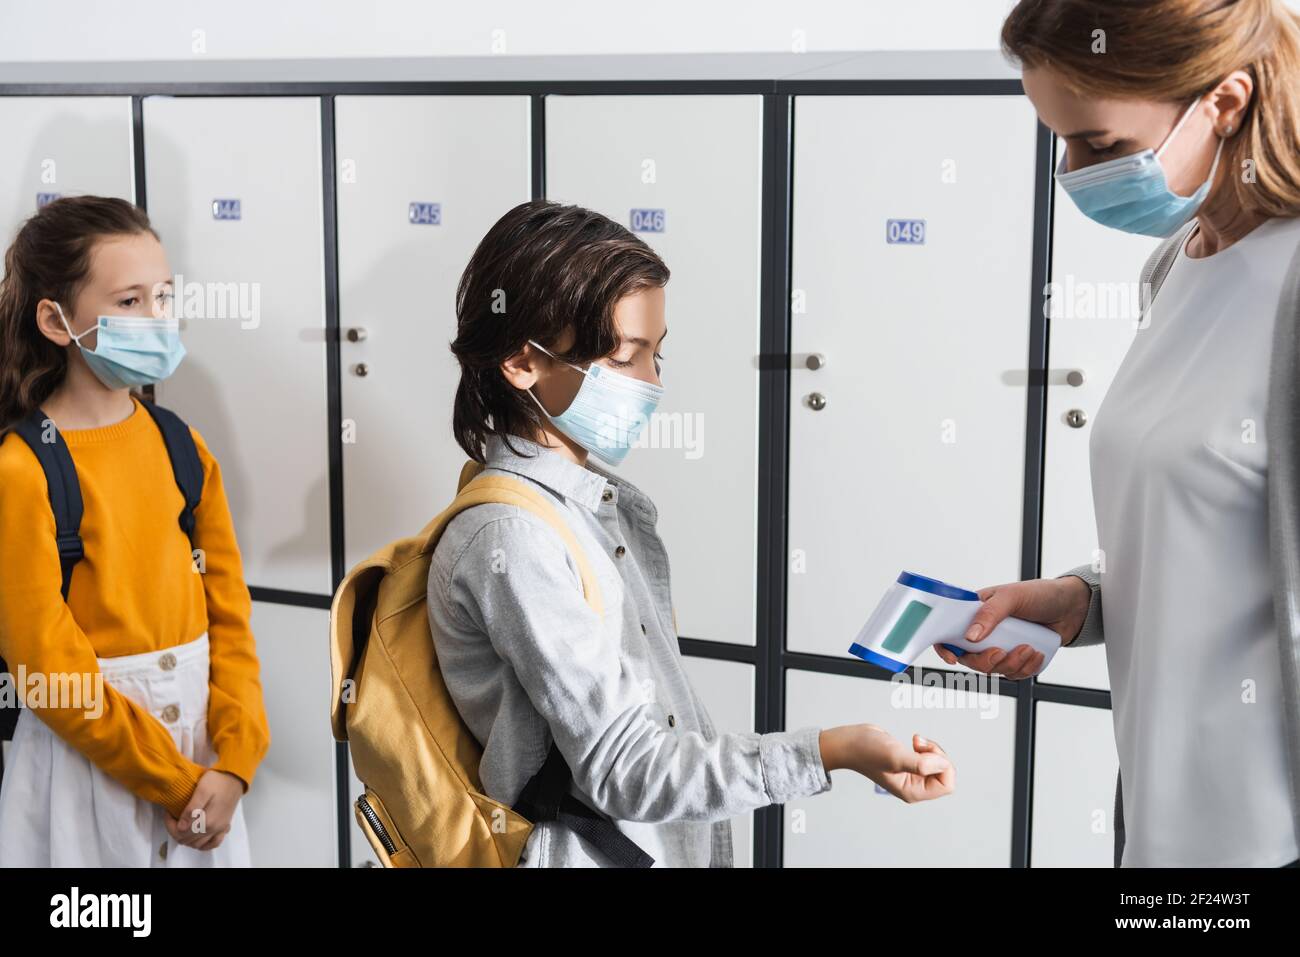 Lehrer in der medizinischen Maske mit Infrarot-Thermometer auf der Hand Pupille im Korridor Stockfoto